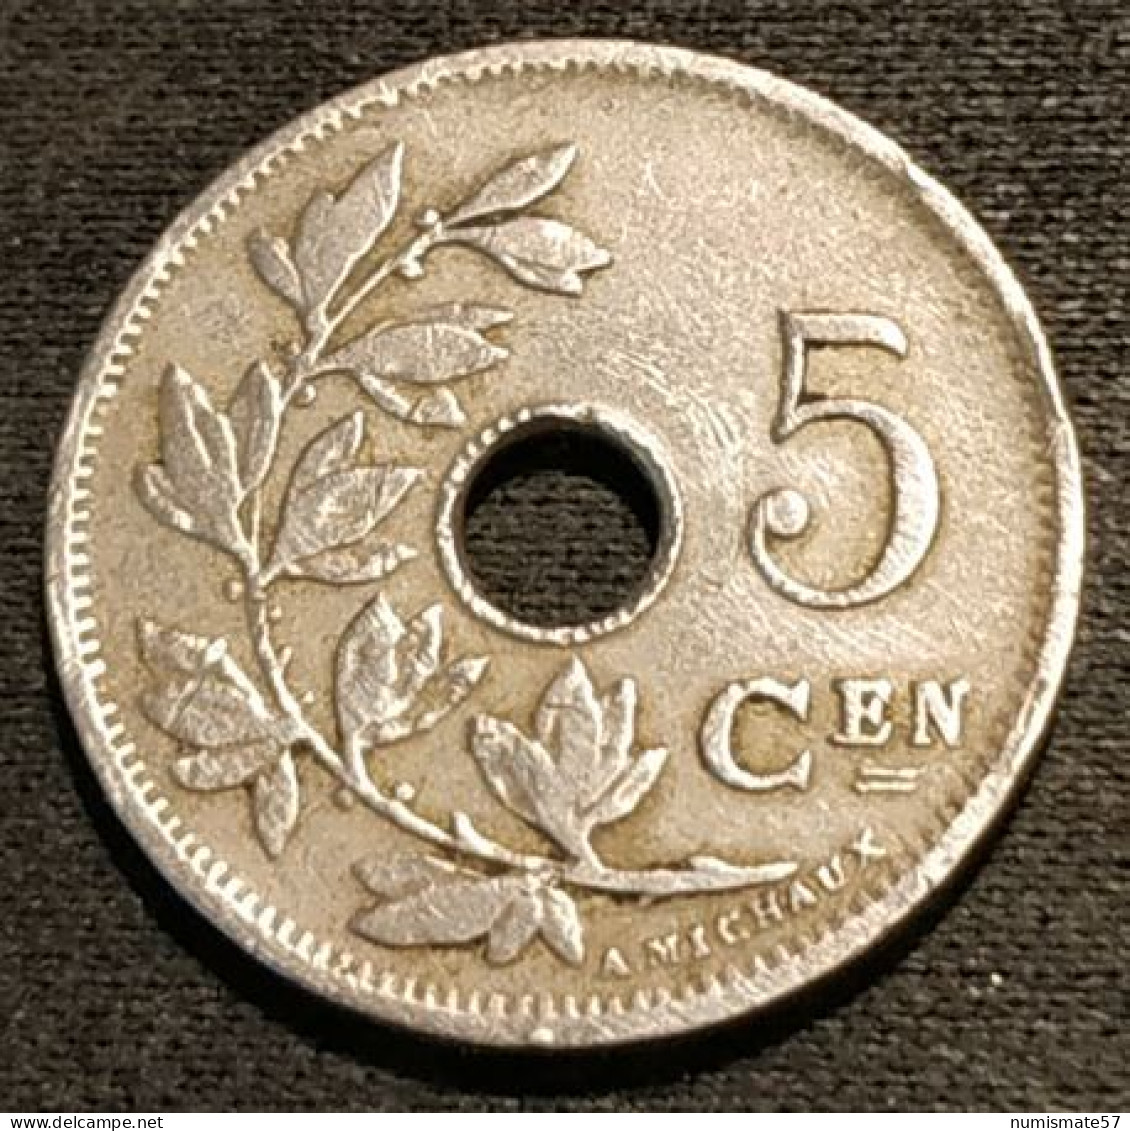 BELGIQUE - BELGIUM - 5 CENTIMES 1902 - Légende NL - Petite Date - Léopold II - Type Michaux - KM 47 - 5 Centimes